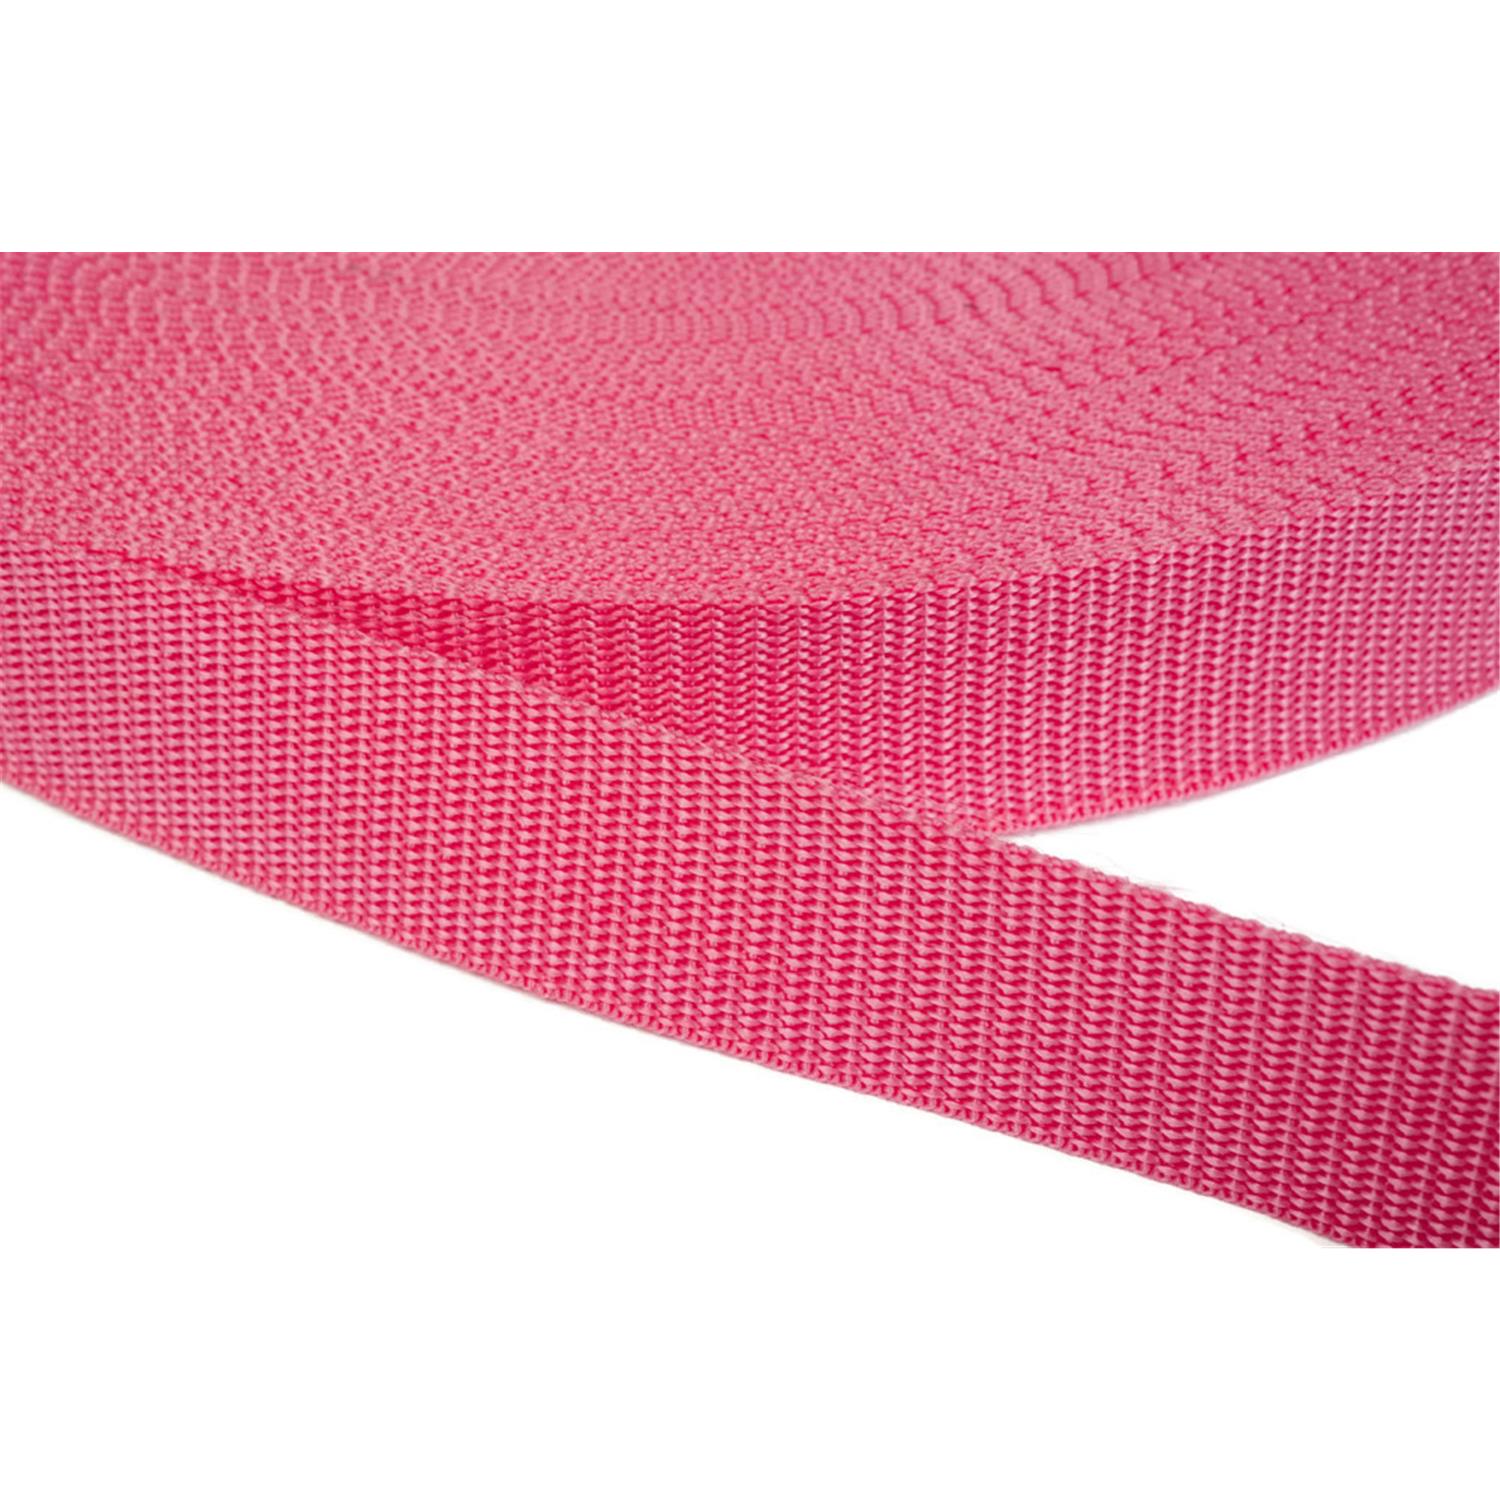 Gurtband 20mm breit aus Polypropylen in 41 Farben 13 - pink 50 Meter